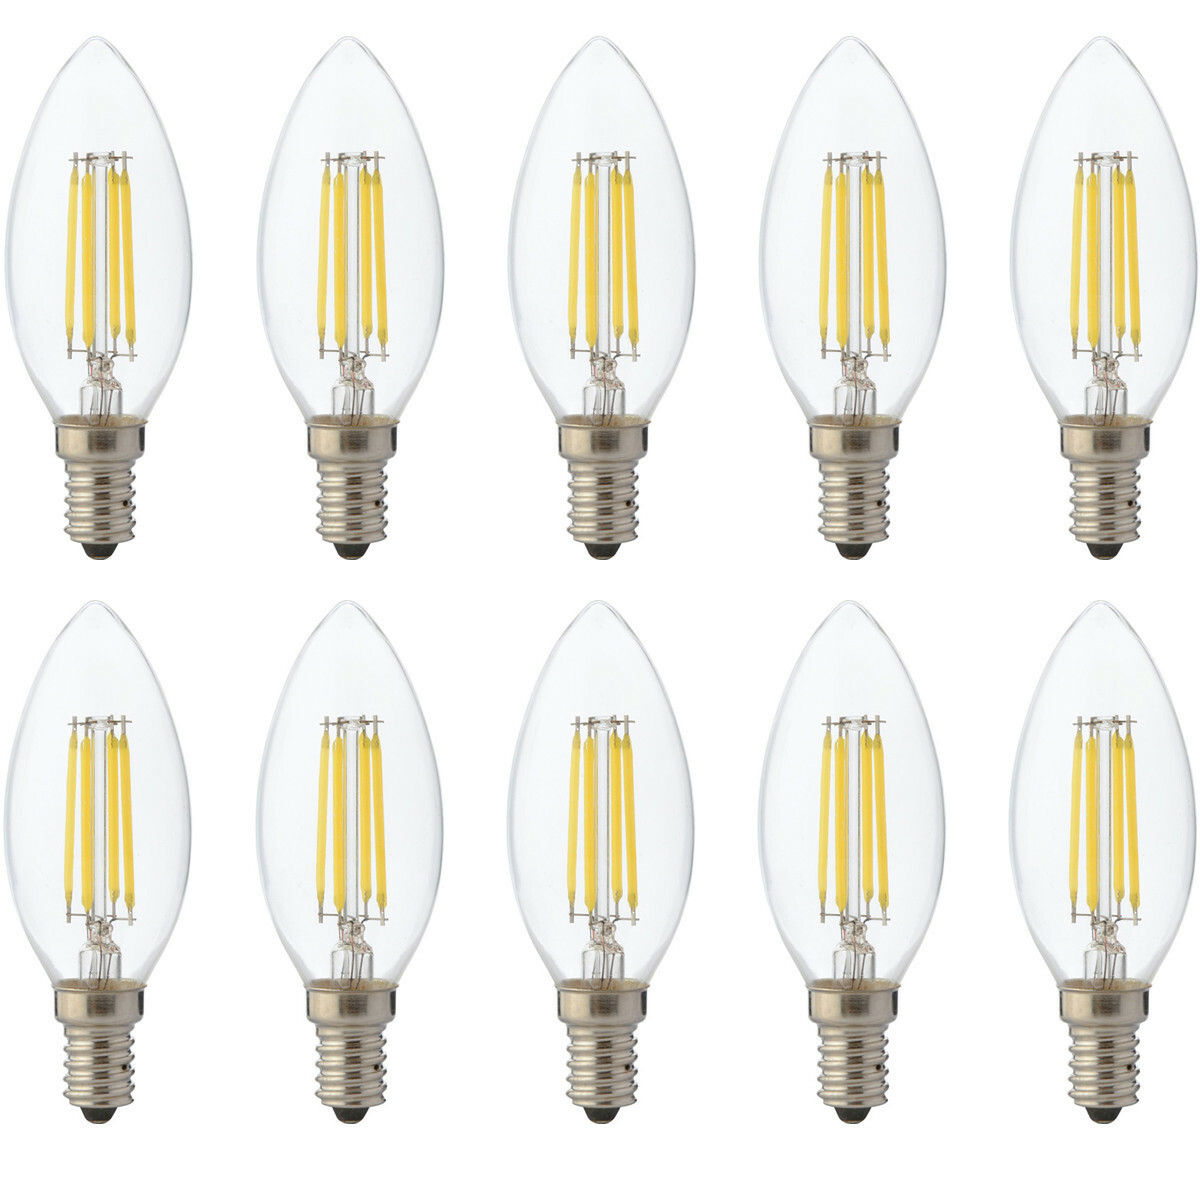 Hulpeloosheid Industrialiseren ik ben slaperig Voordeelpak LED Lamp 10 Pack - Kaarslamp - Filament - E14 Fitting - 6W  Dimbaar - Warm Wit 2700K | BES LED